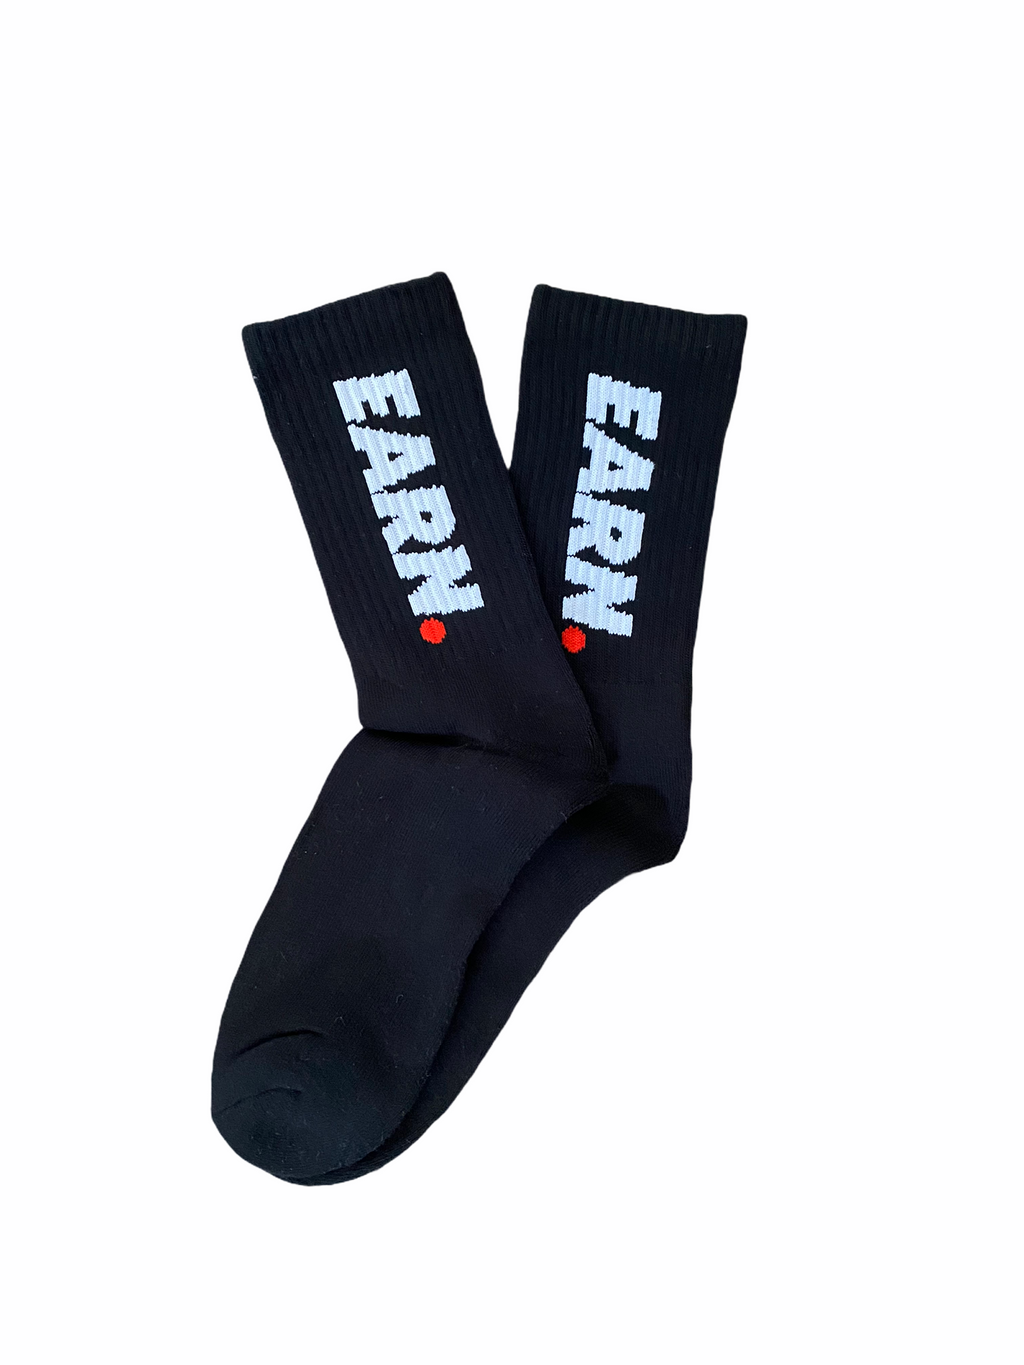 E.socks